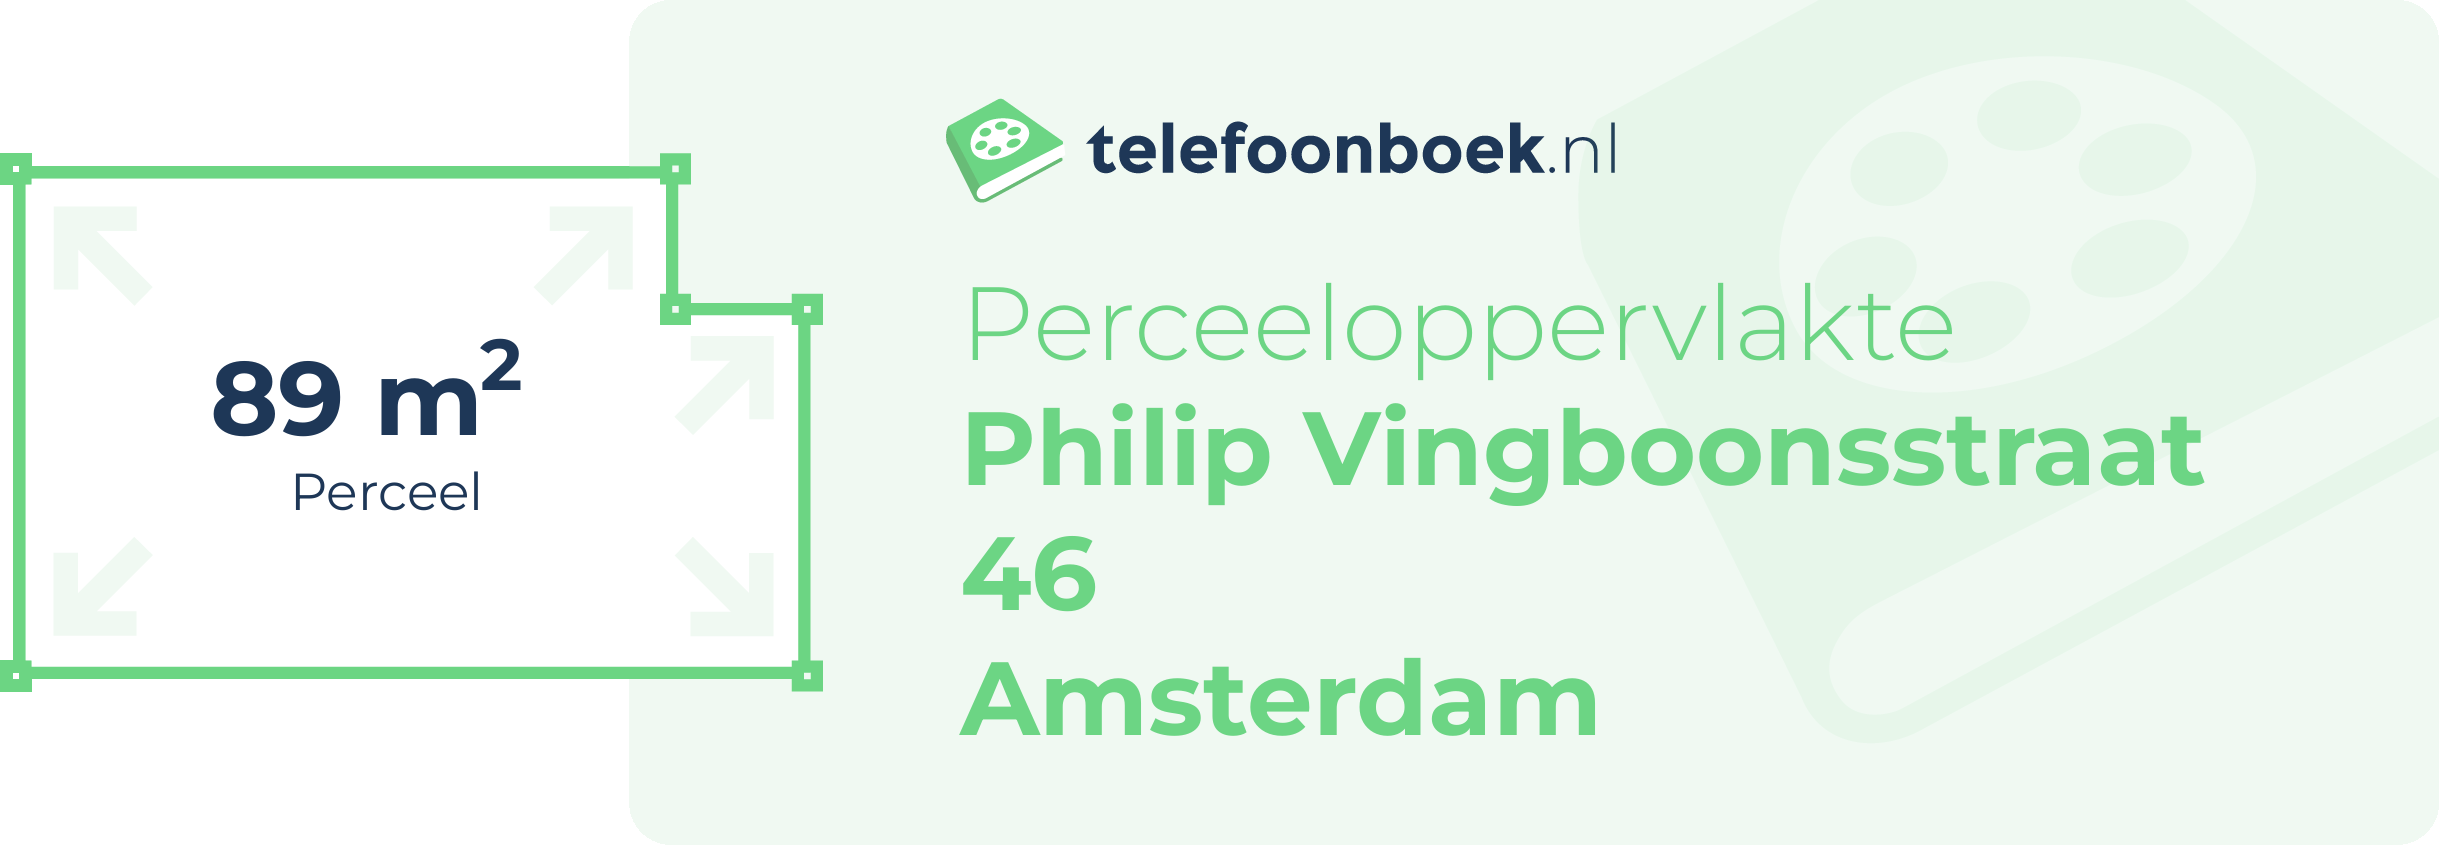 Perceeloppervlakte Philip Vingboonsstraat 46 Amsterdam